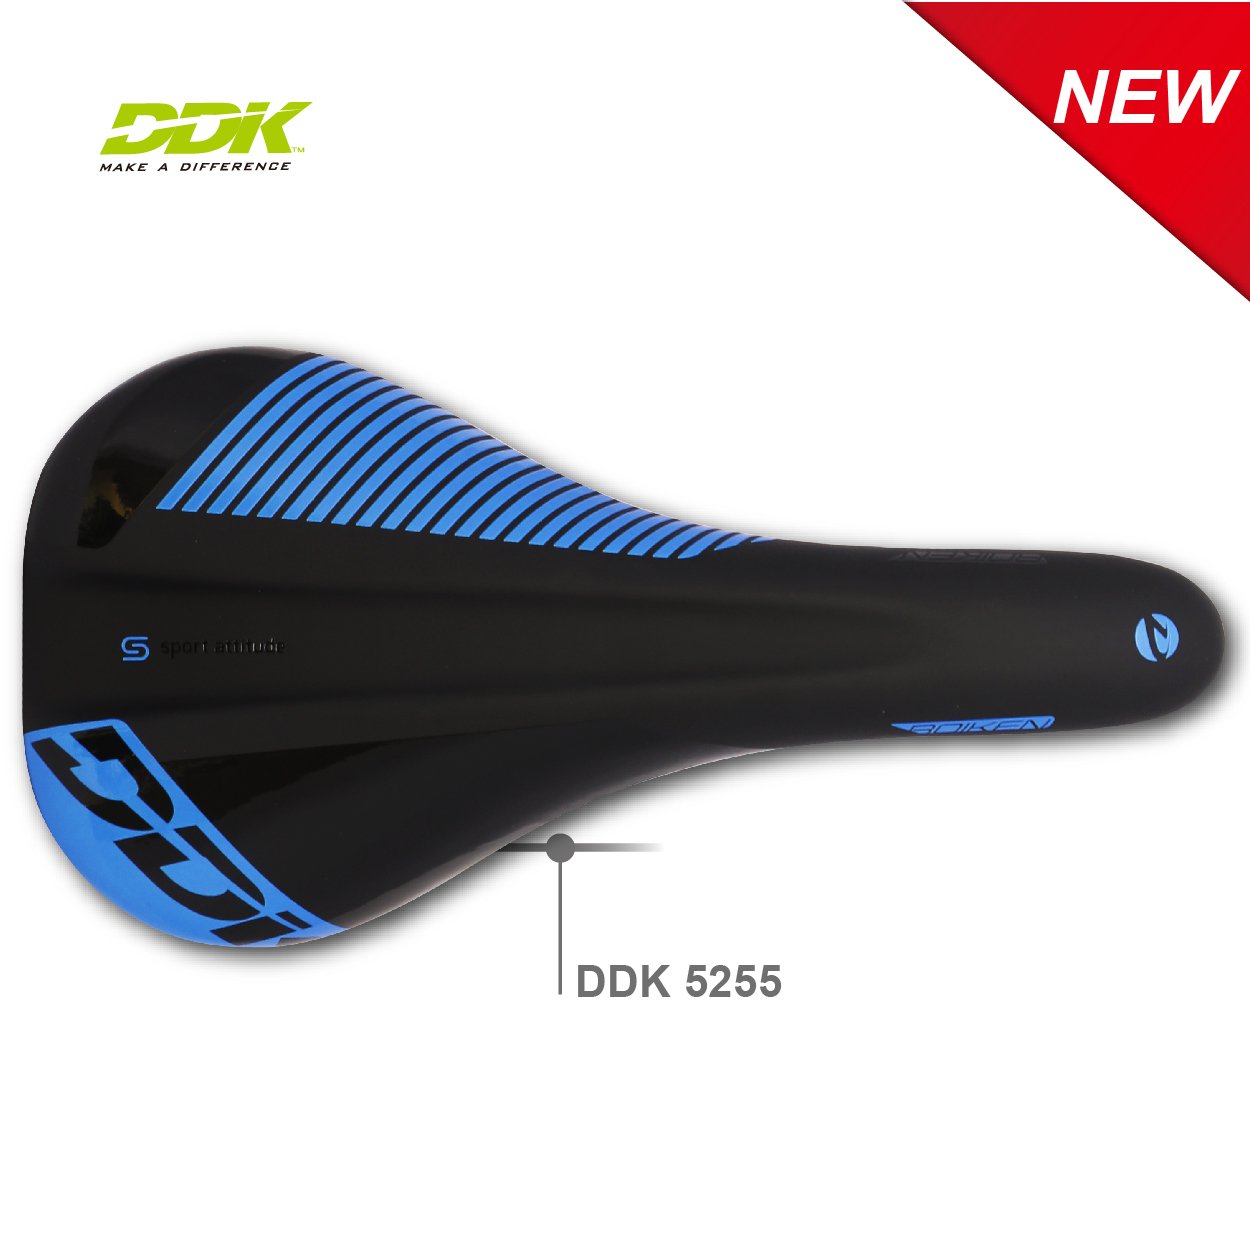 DDK-5255 BOIKEN